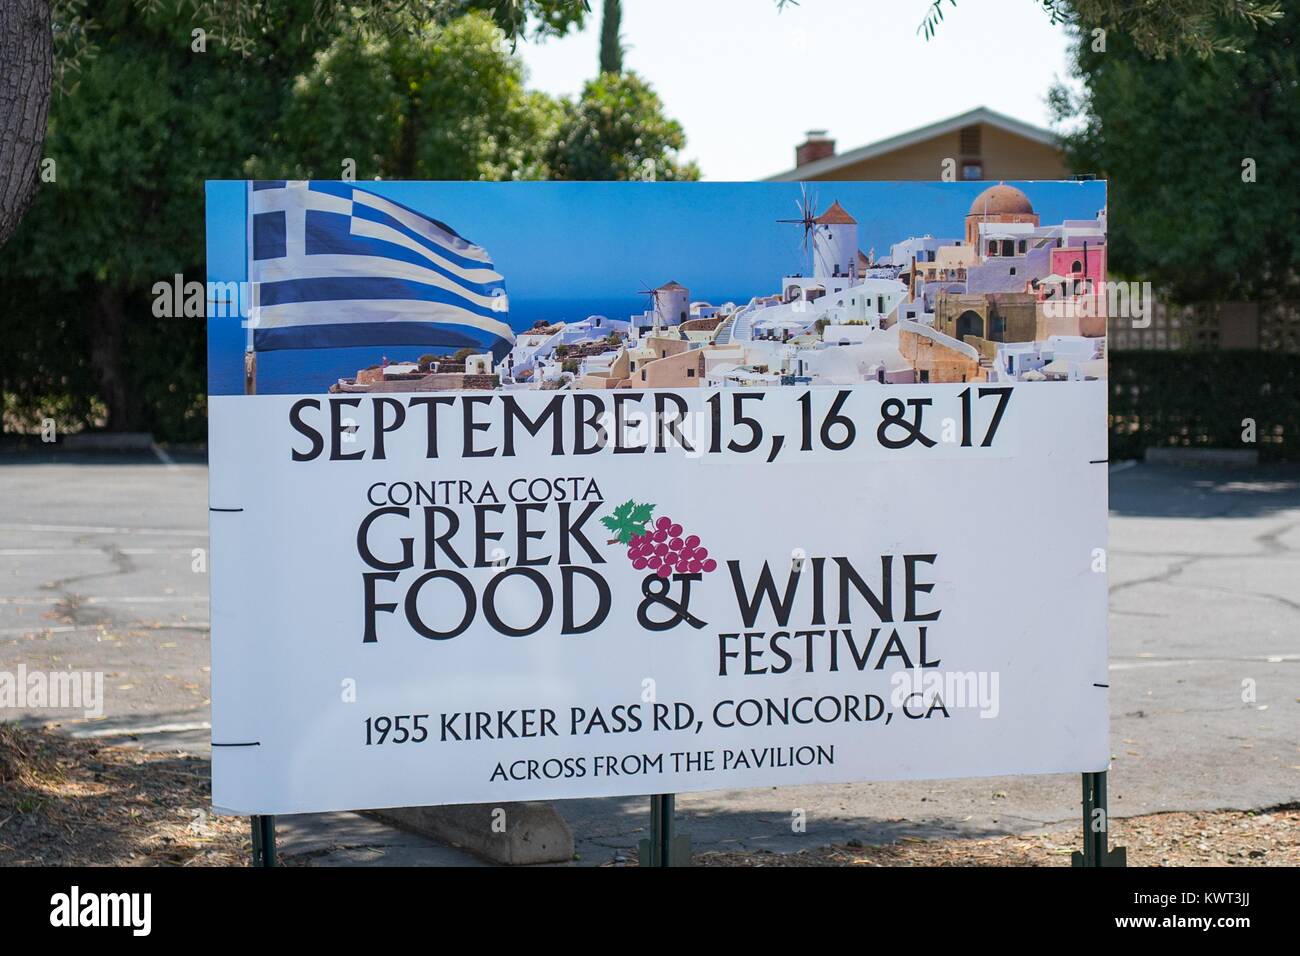 La publicité signalisation grec Contra Costa Food and Wine Festival, un festival annuel de la culture grecque dans la région de comté de Contra Costa, Concord, Californie, le 8 septembre 2017. Banque D'Images